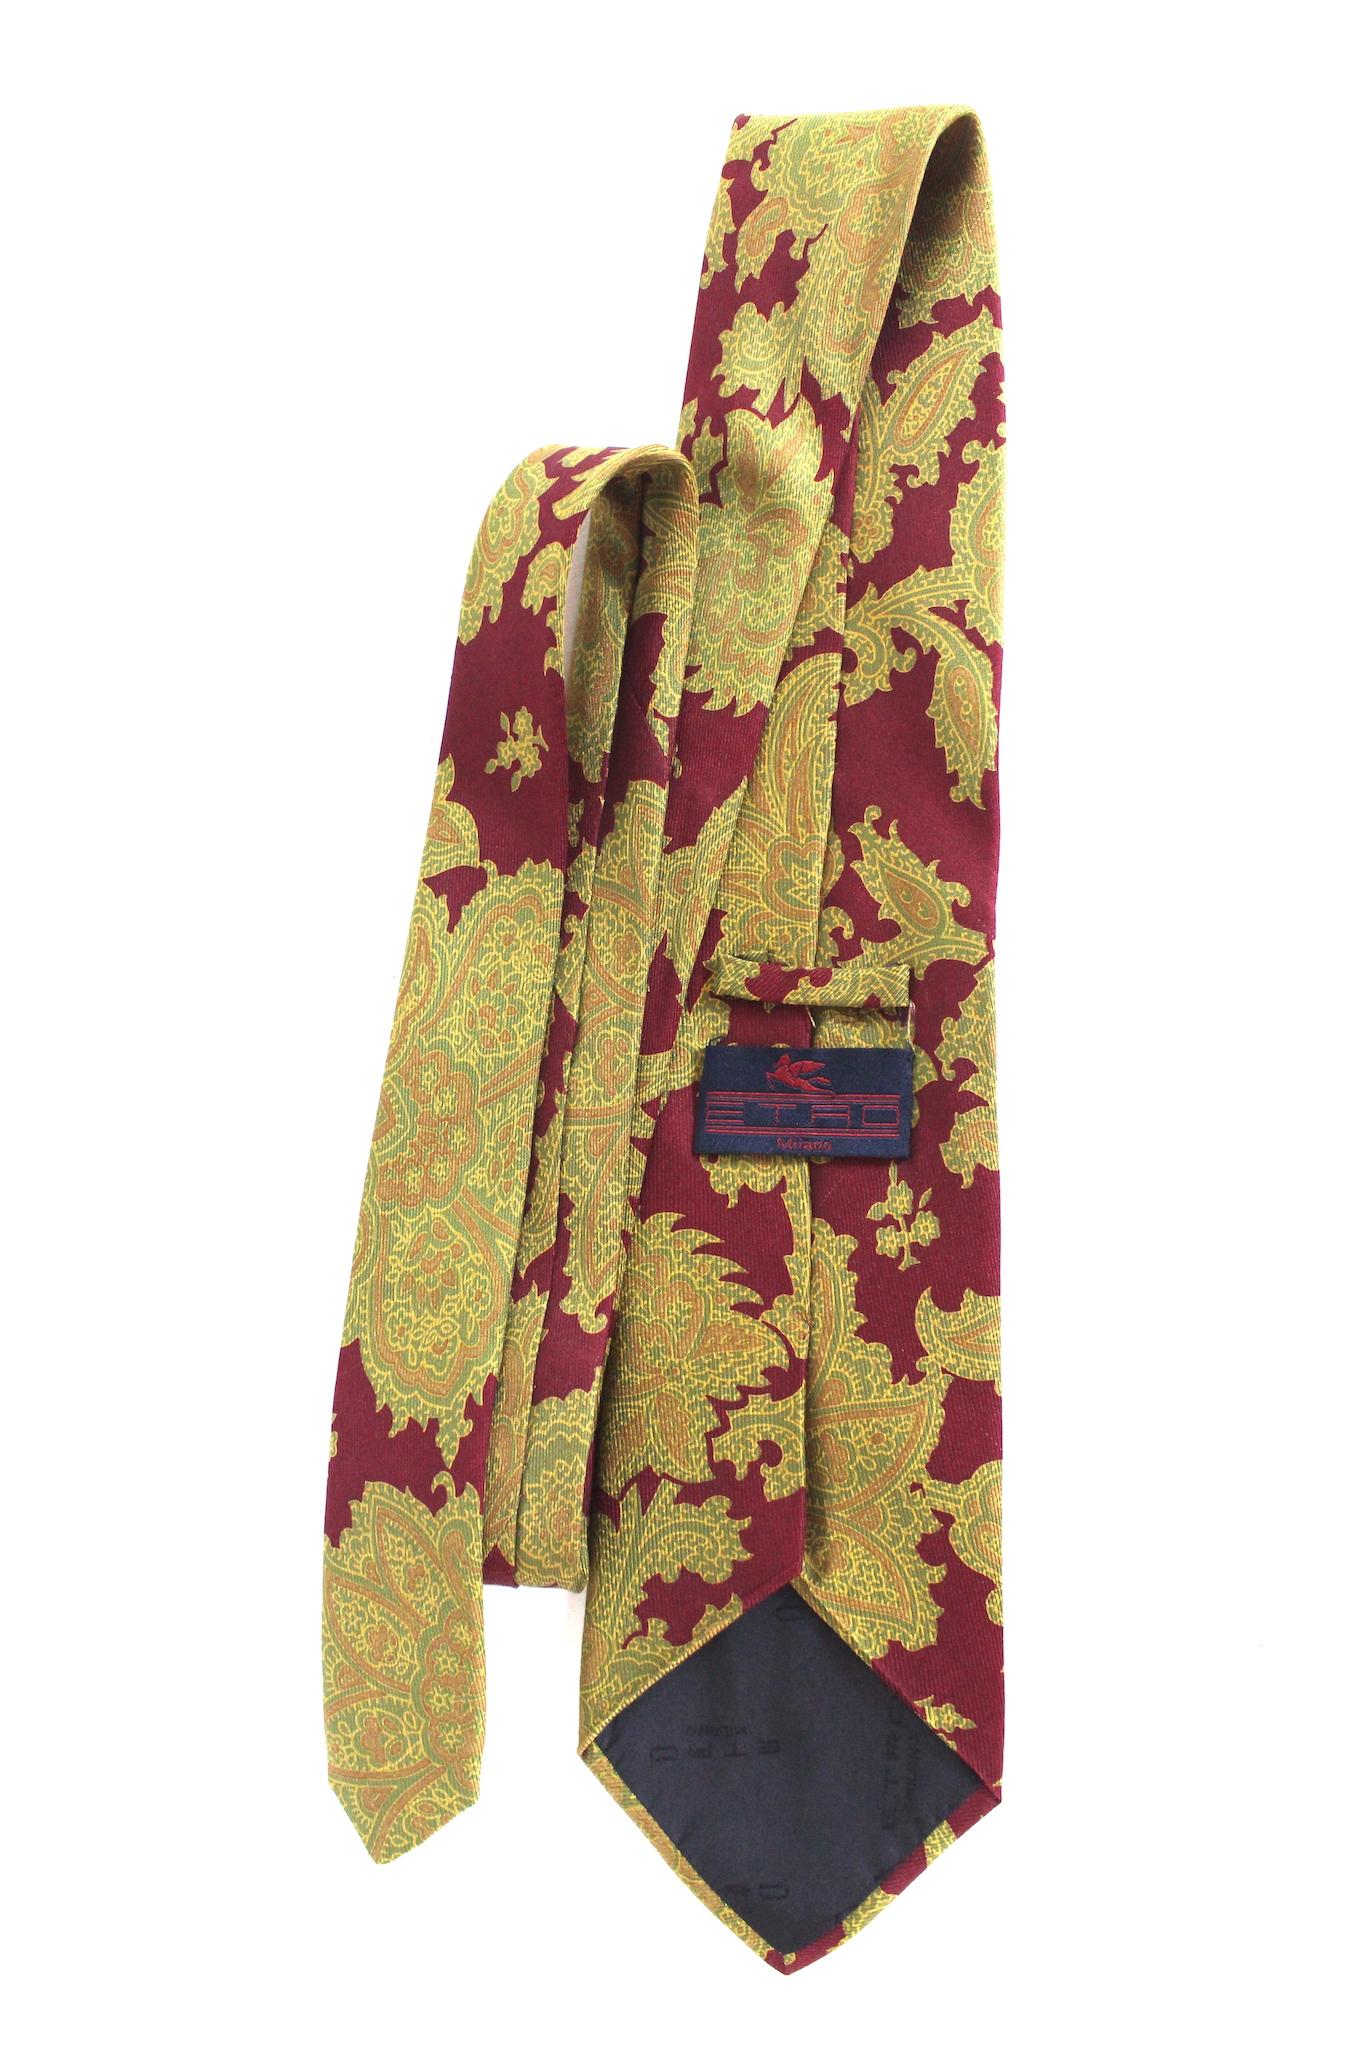 Etro Vintage-Krawatte aus den 90ern. Rote Farbe mit beigem Blumenmuster, 100% Seide. Hergestellt in Italien.

Länge: 145 cm
Breite: 9.5 cm
